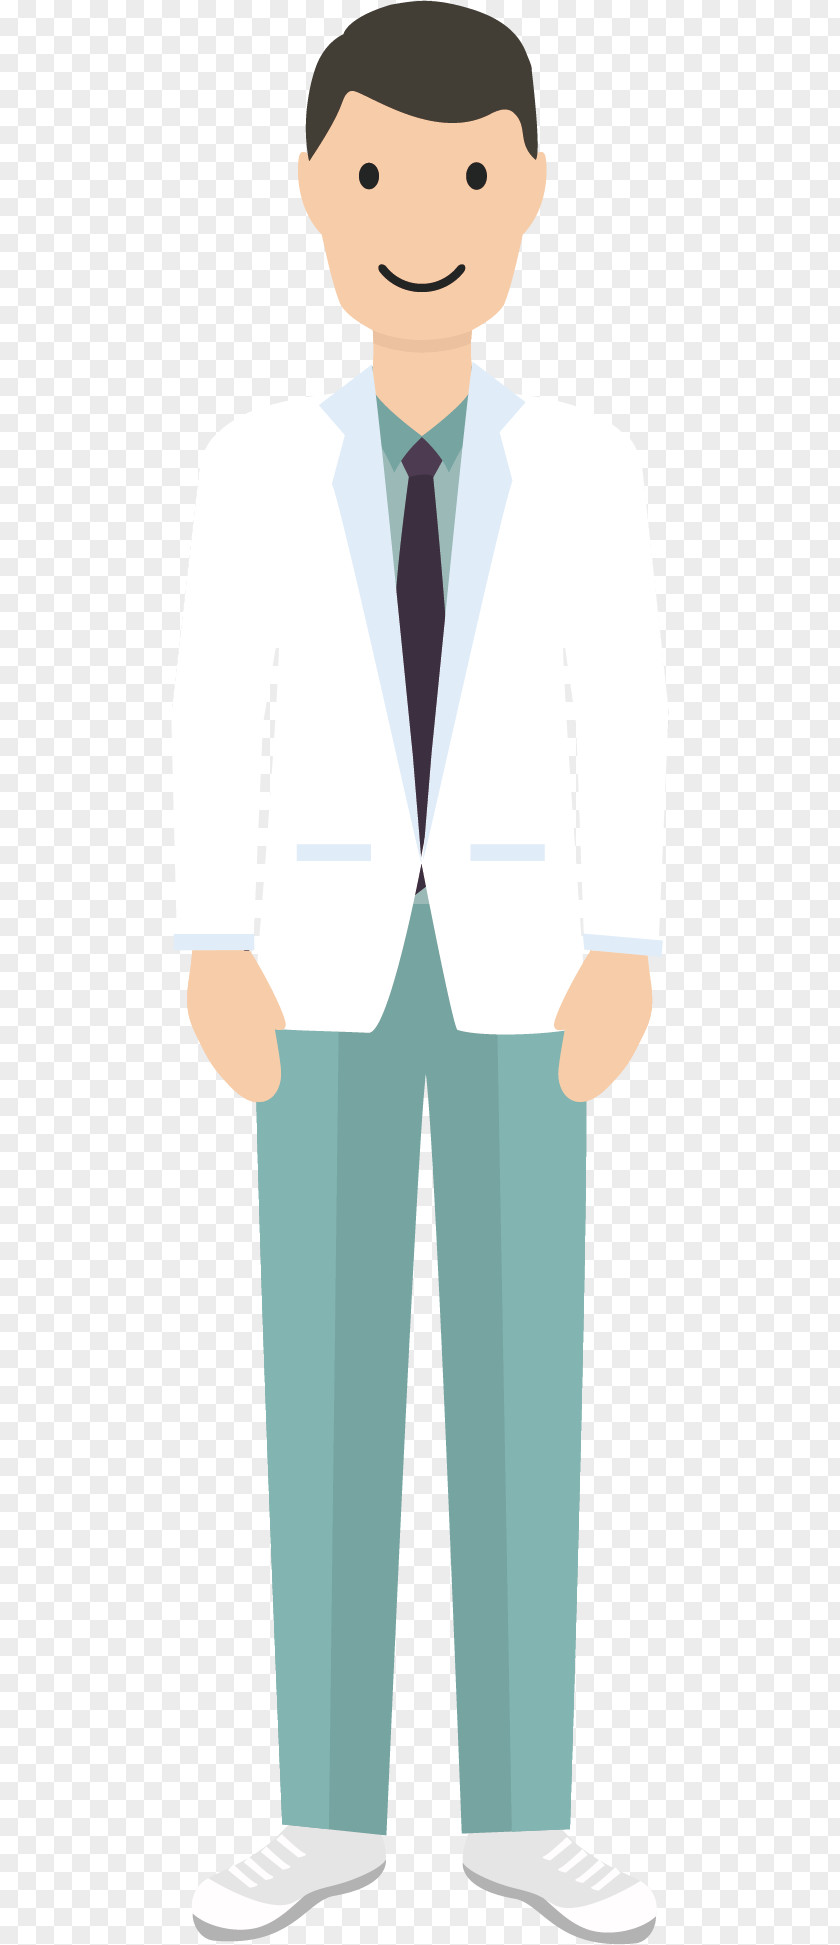 Smiling Doctor Man Illustration PNG